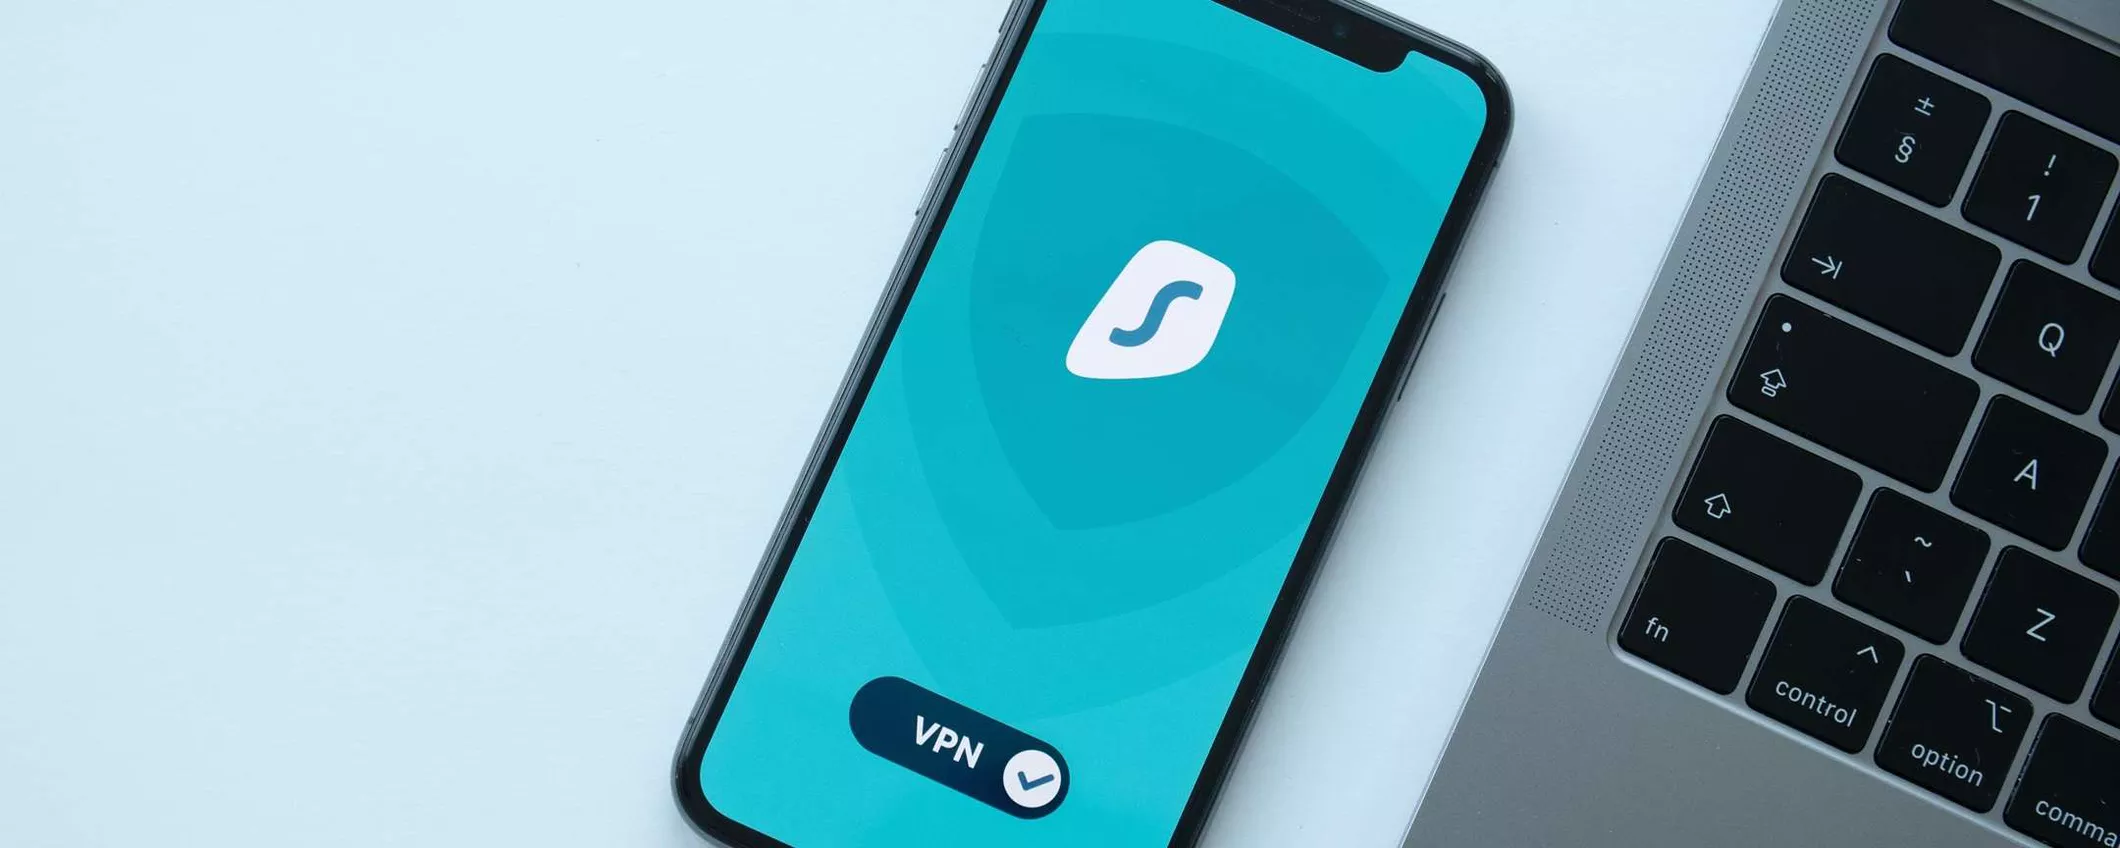 Evitare i blocchi geografici online: con la VPN illimitata di Surfshark bastano 2,29 €/mese